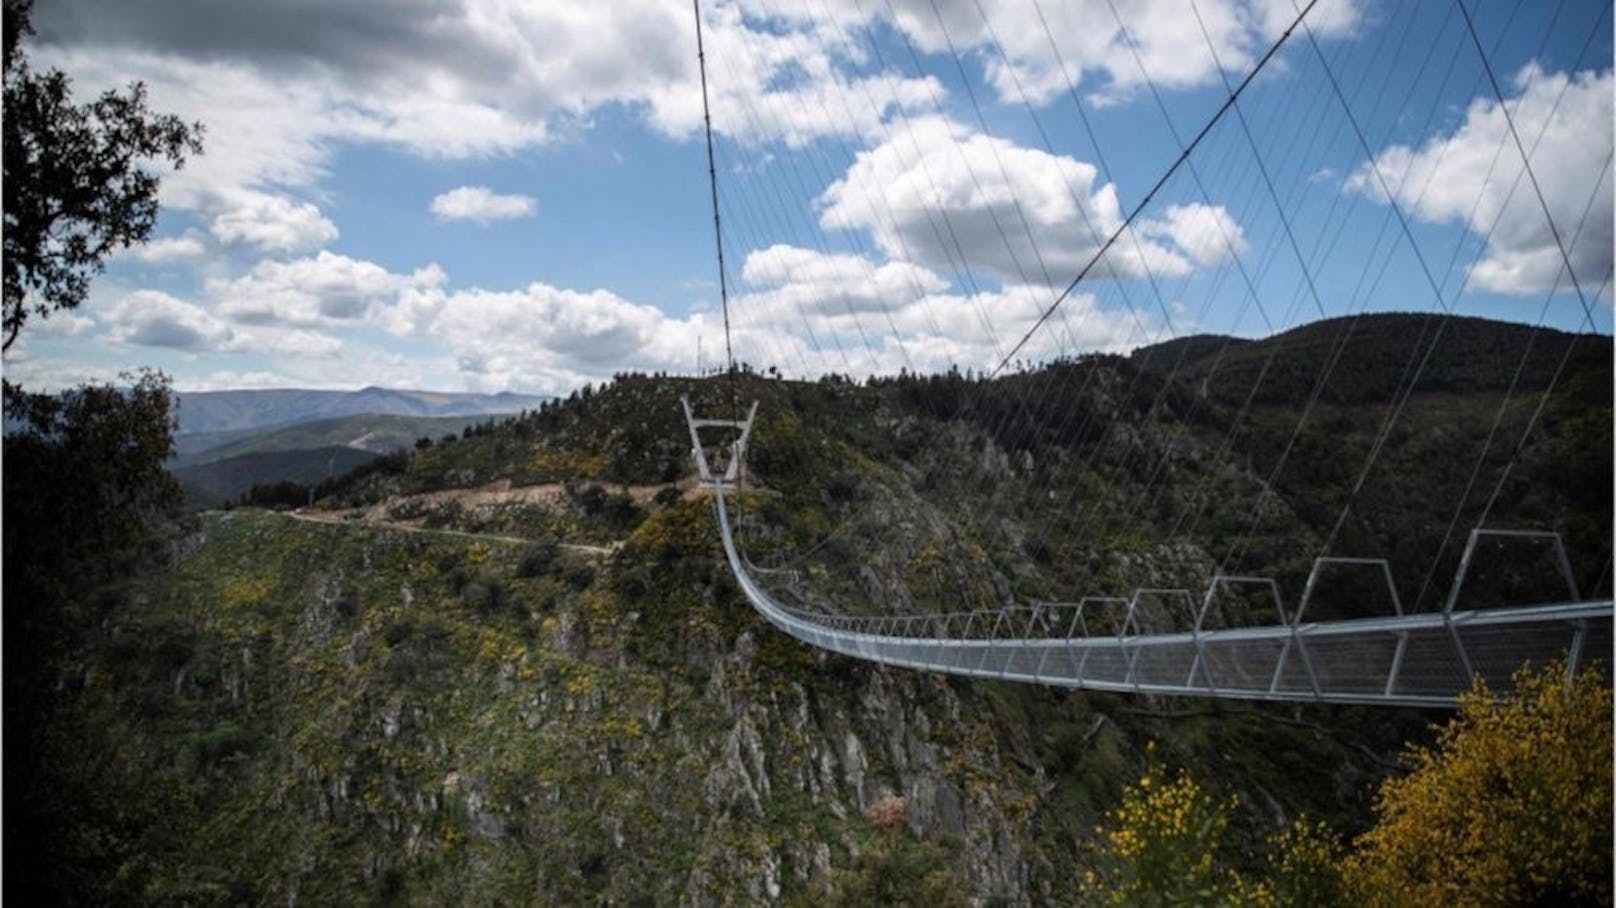 Die "516 Arouca" wurde am 2. Mai eröffnet. Die in Portugal liegende Hängebrücke ist nun die längste ihrer Art der Welt.